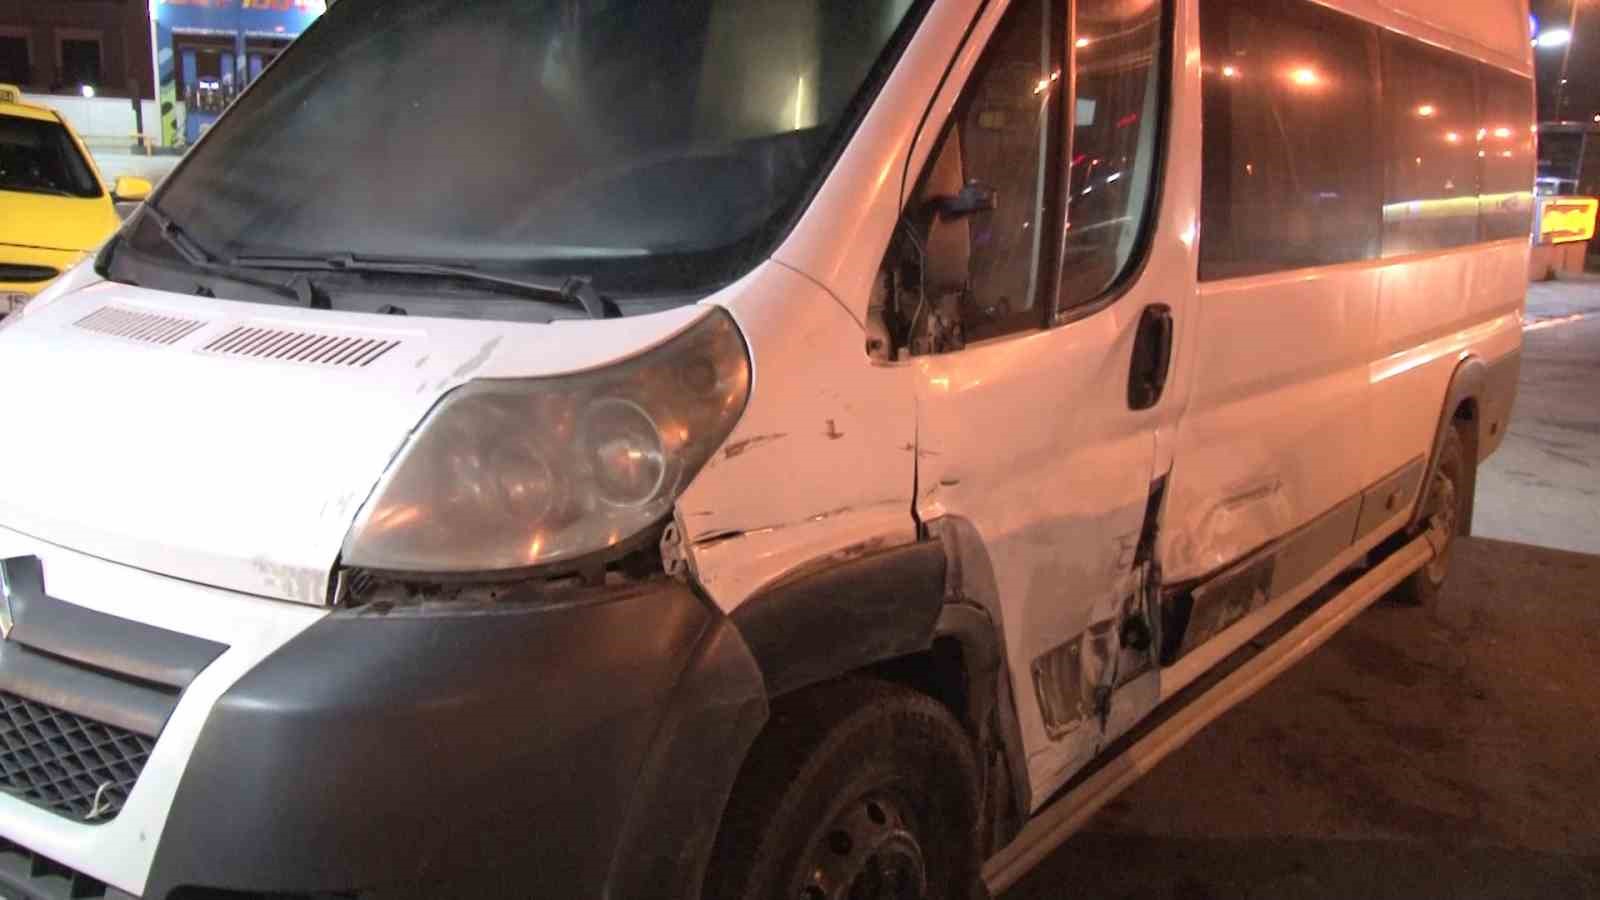 Maltepe’de alkollü sürücünün kullandığı otomobil 2 araca çarptı: 1 yaralı
